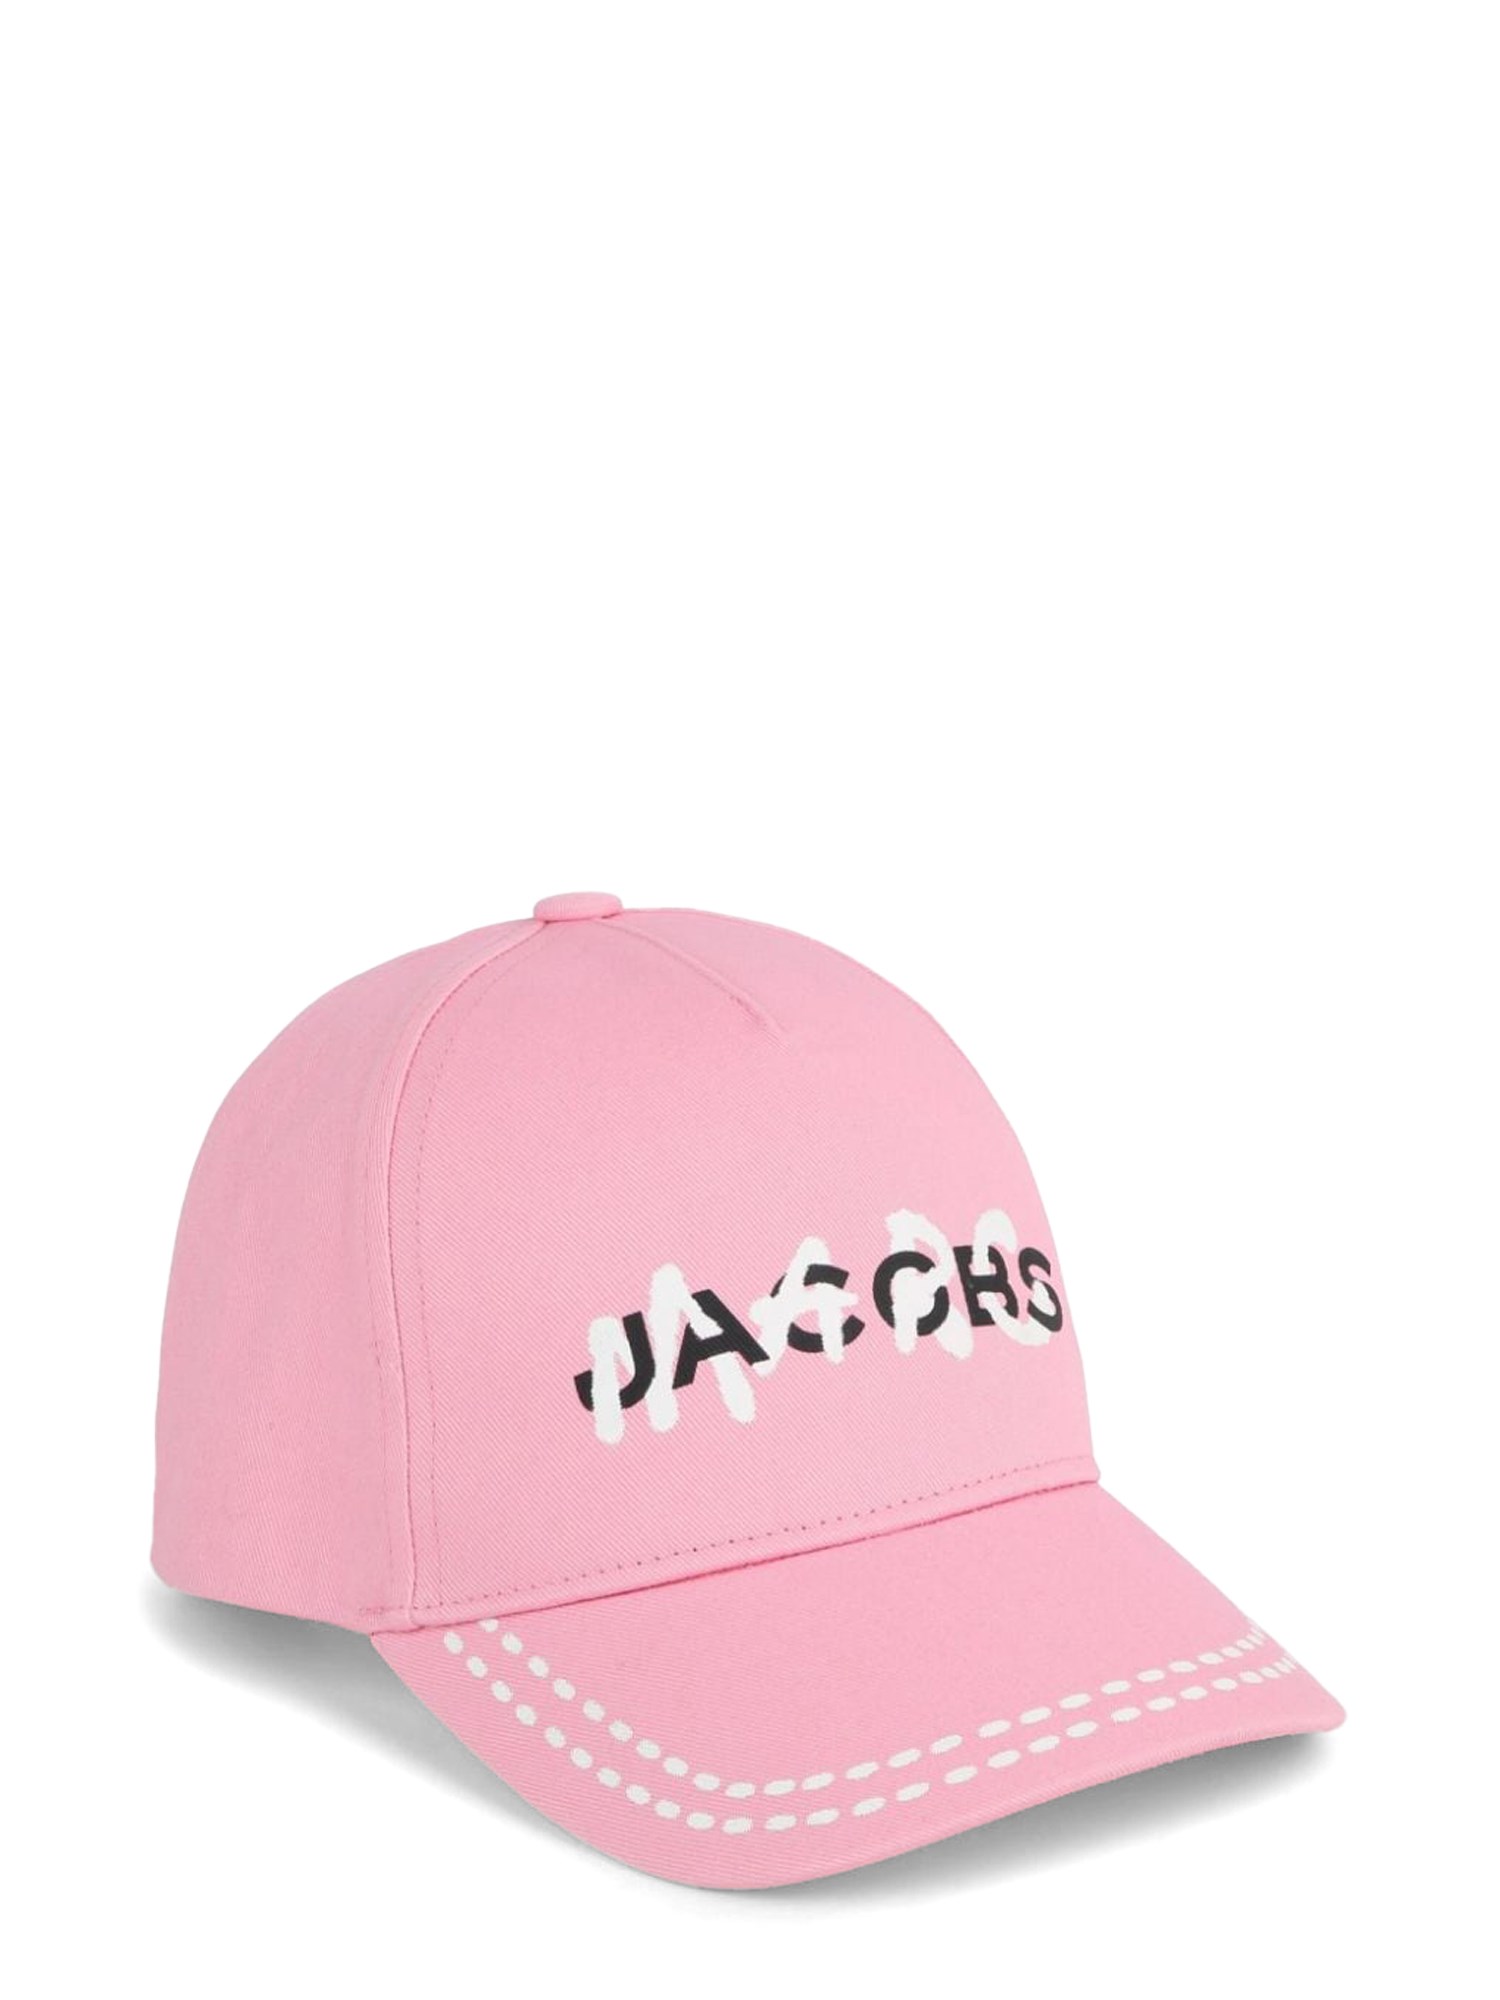 marc jacobs hat